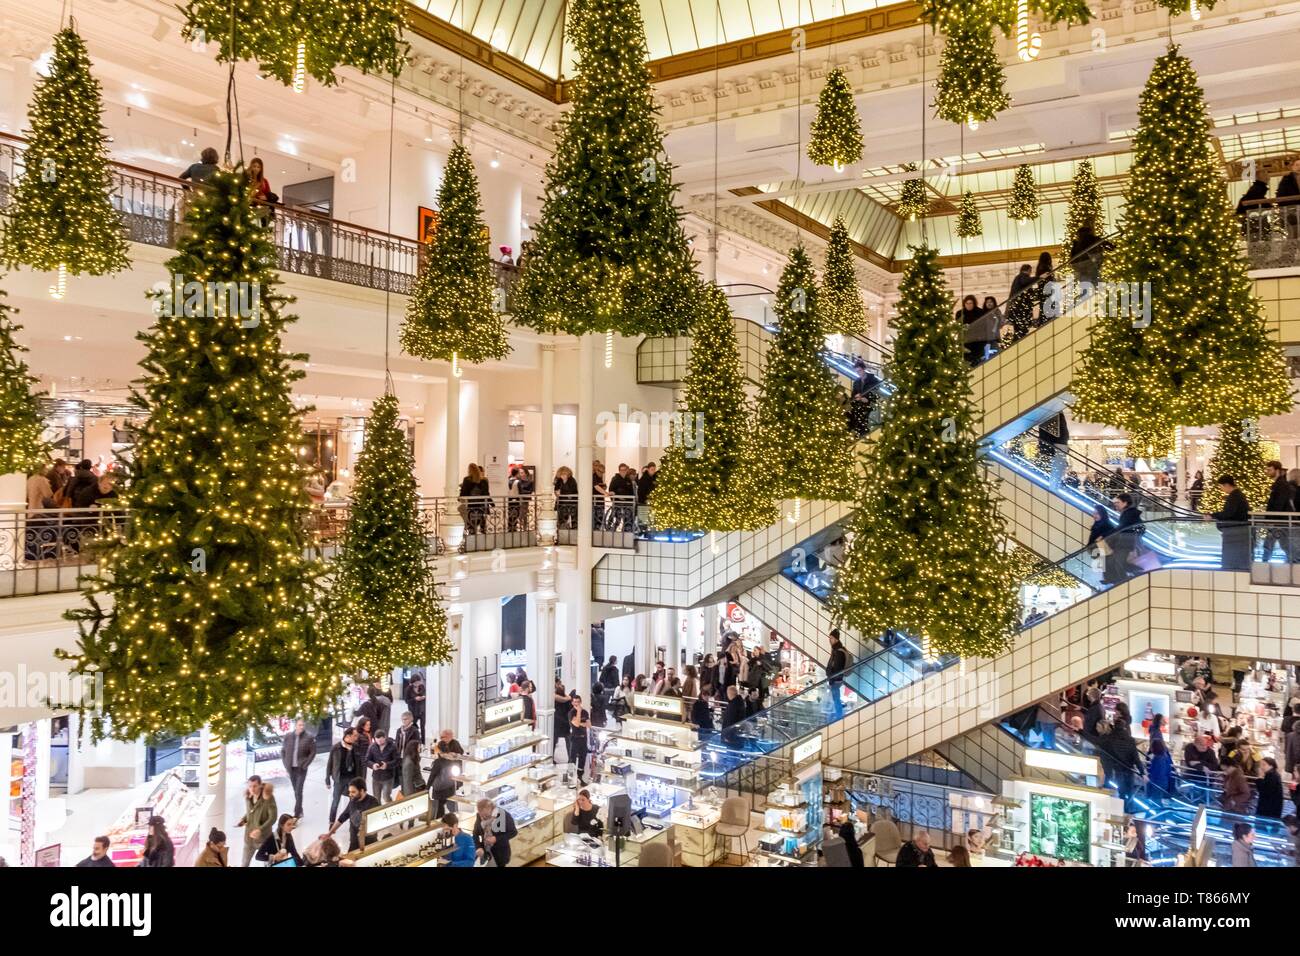 France, Paris, the Bon Marche department store during Christmas